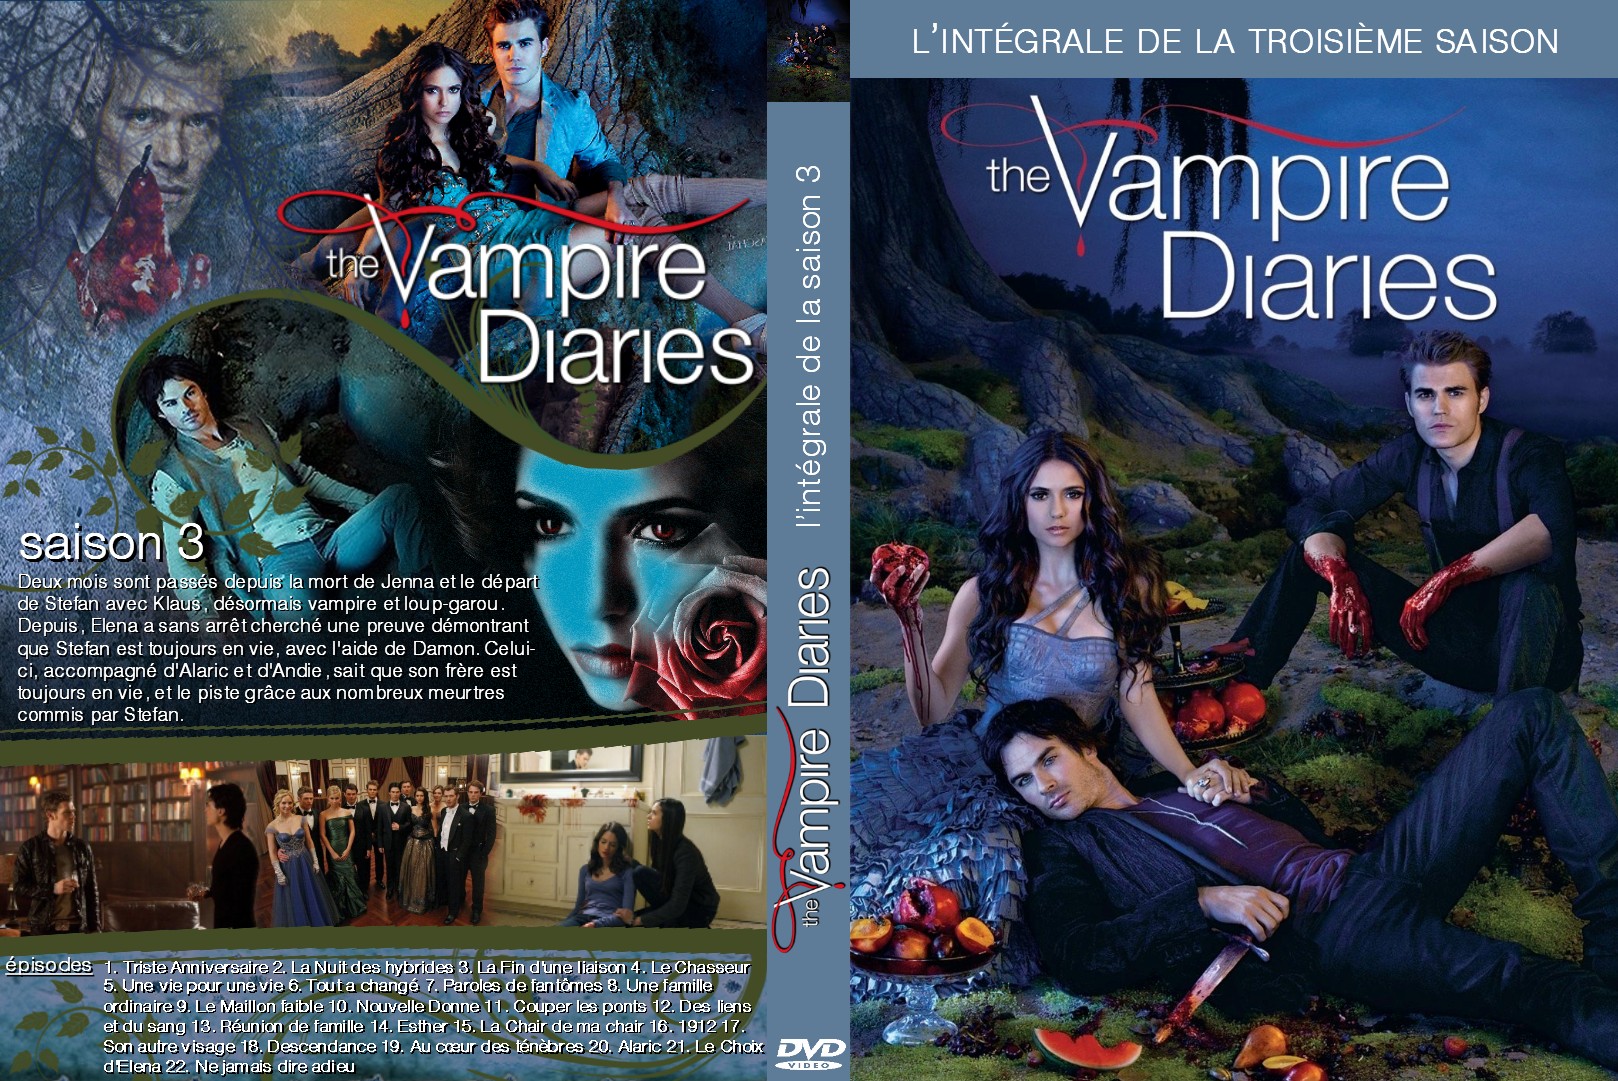 Jaquette Dvd De The Vampire Diaries Saison 3 Custom Cinéma Passion